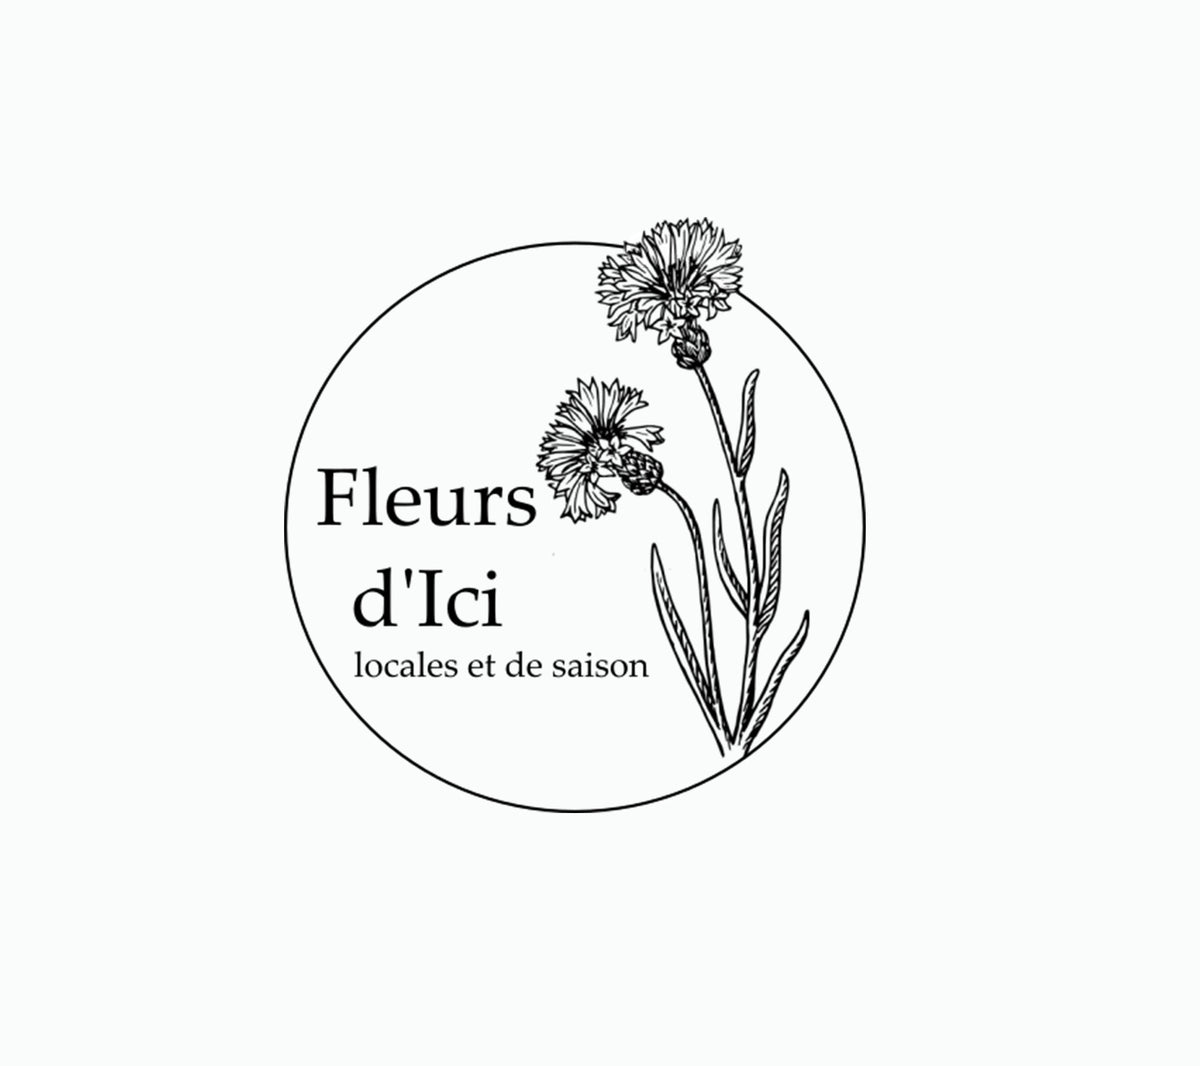 Fleurs d'Ici - 1ère marque de fleurs éthiques 100% Made in France